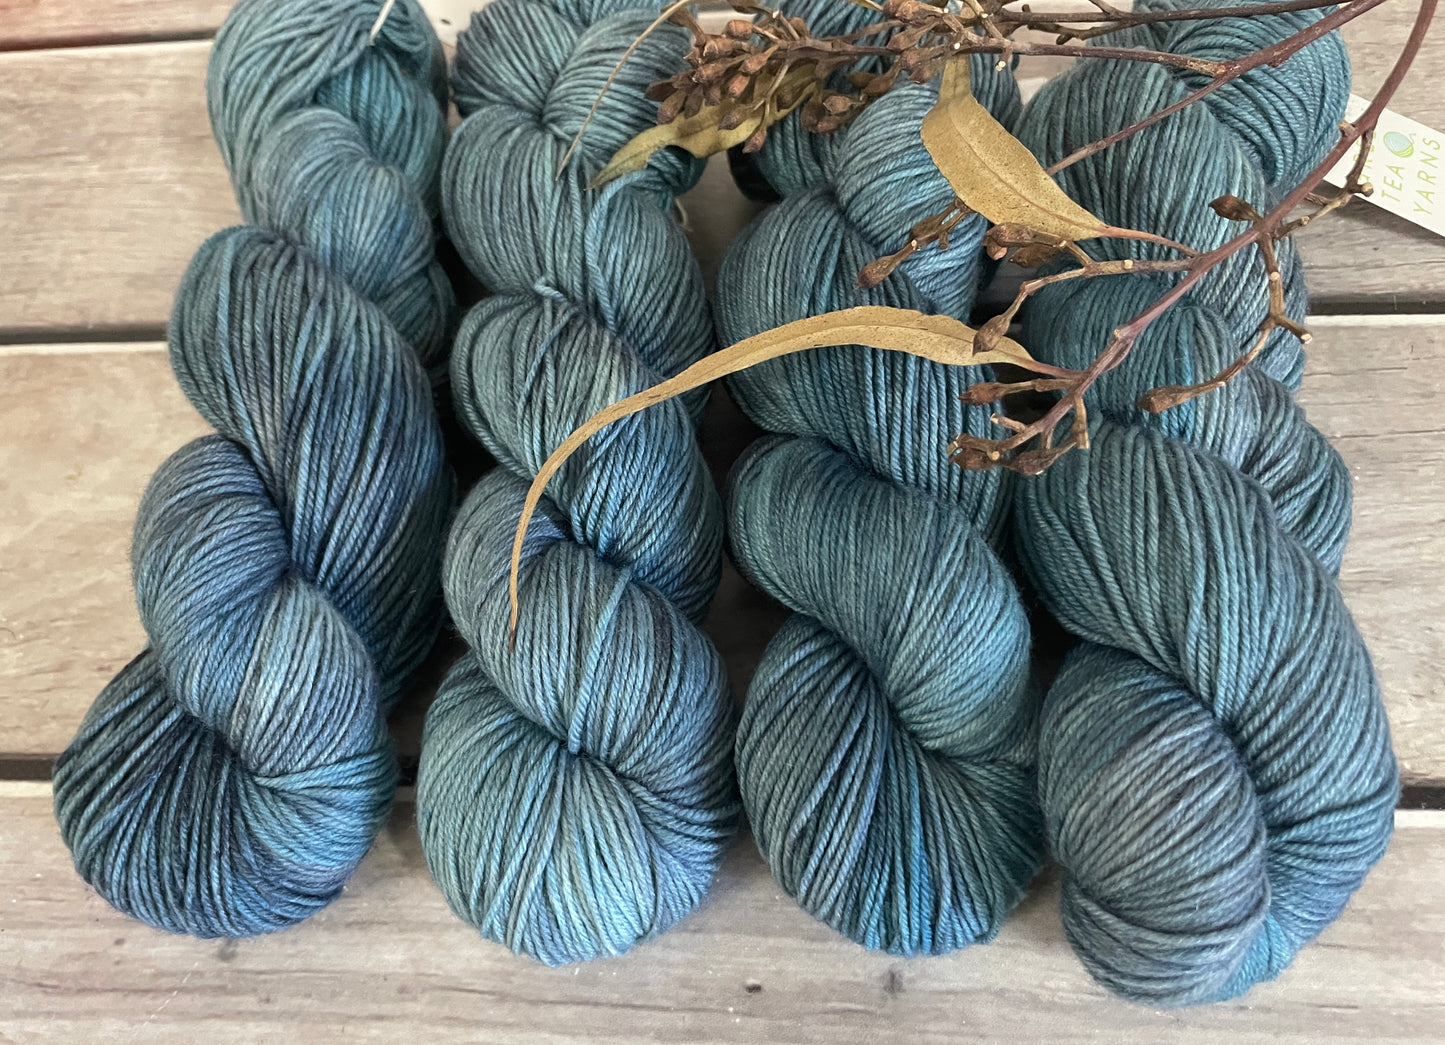 Coulois- 4 ply sock yarn in merino and nylon - Darjeeling